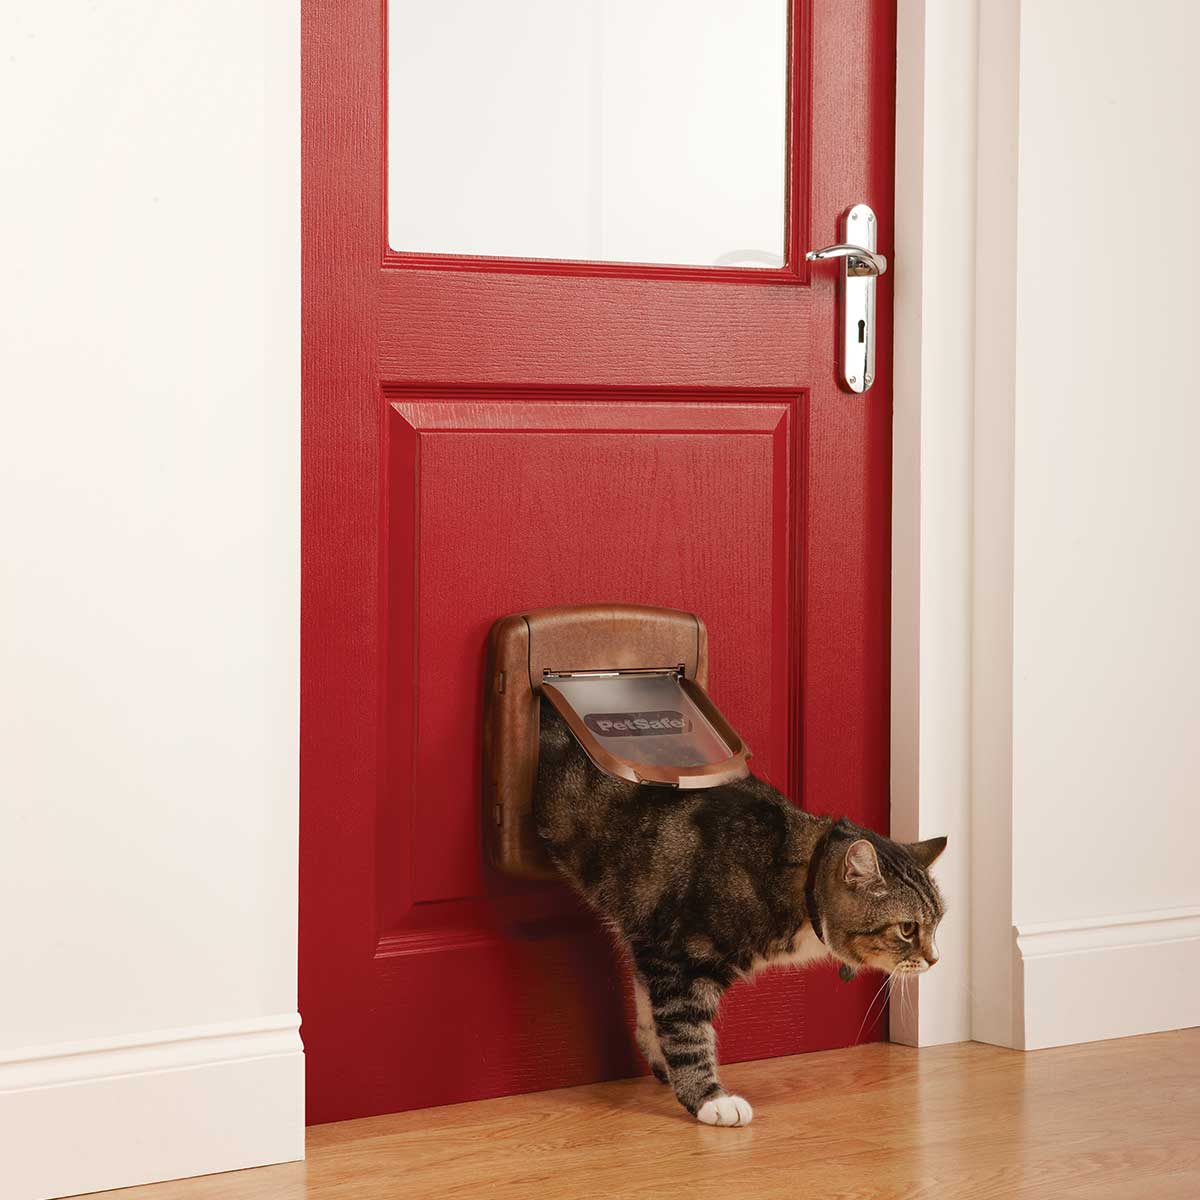 PetSafe Cat flap staywell 420 magnete marrone